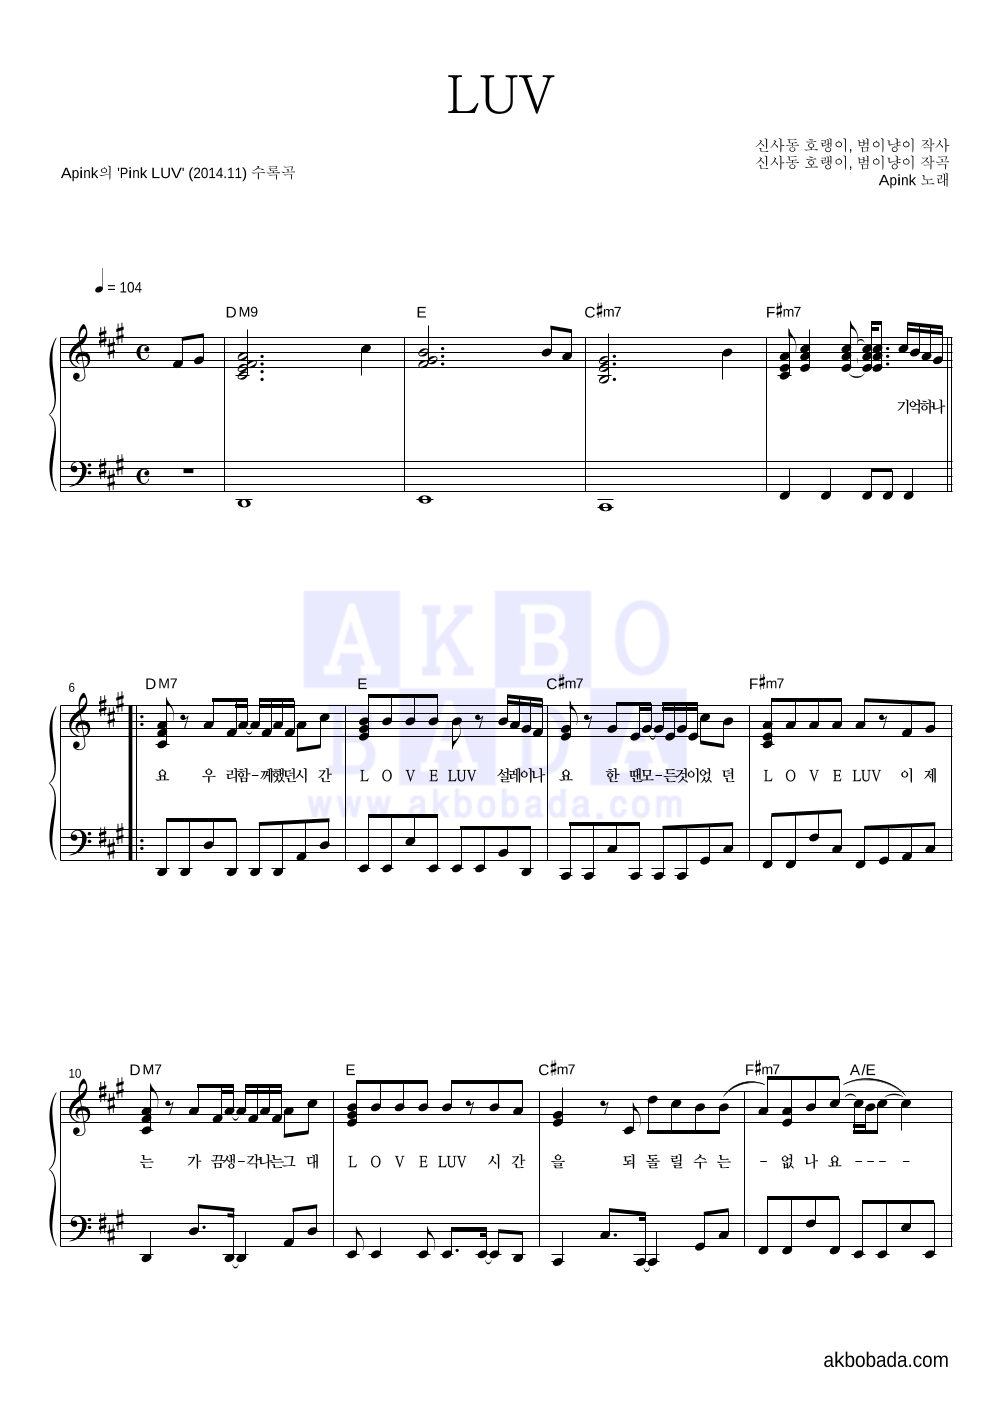 에이핑크 - LUV 피아노 2단 악보 